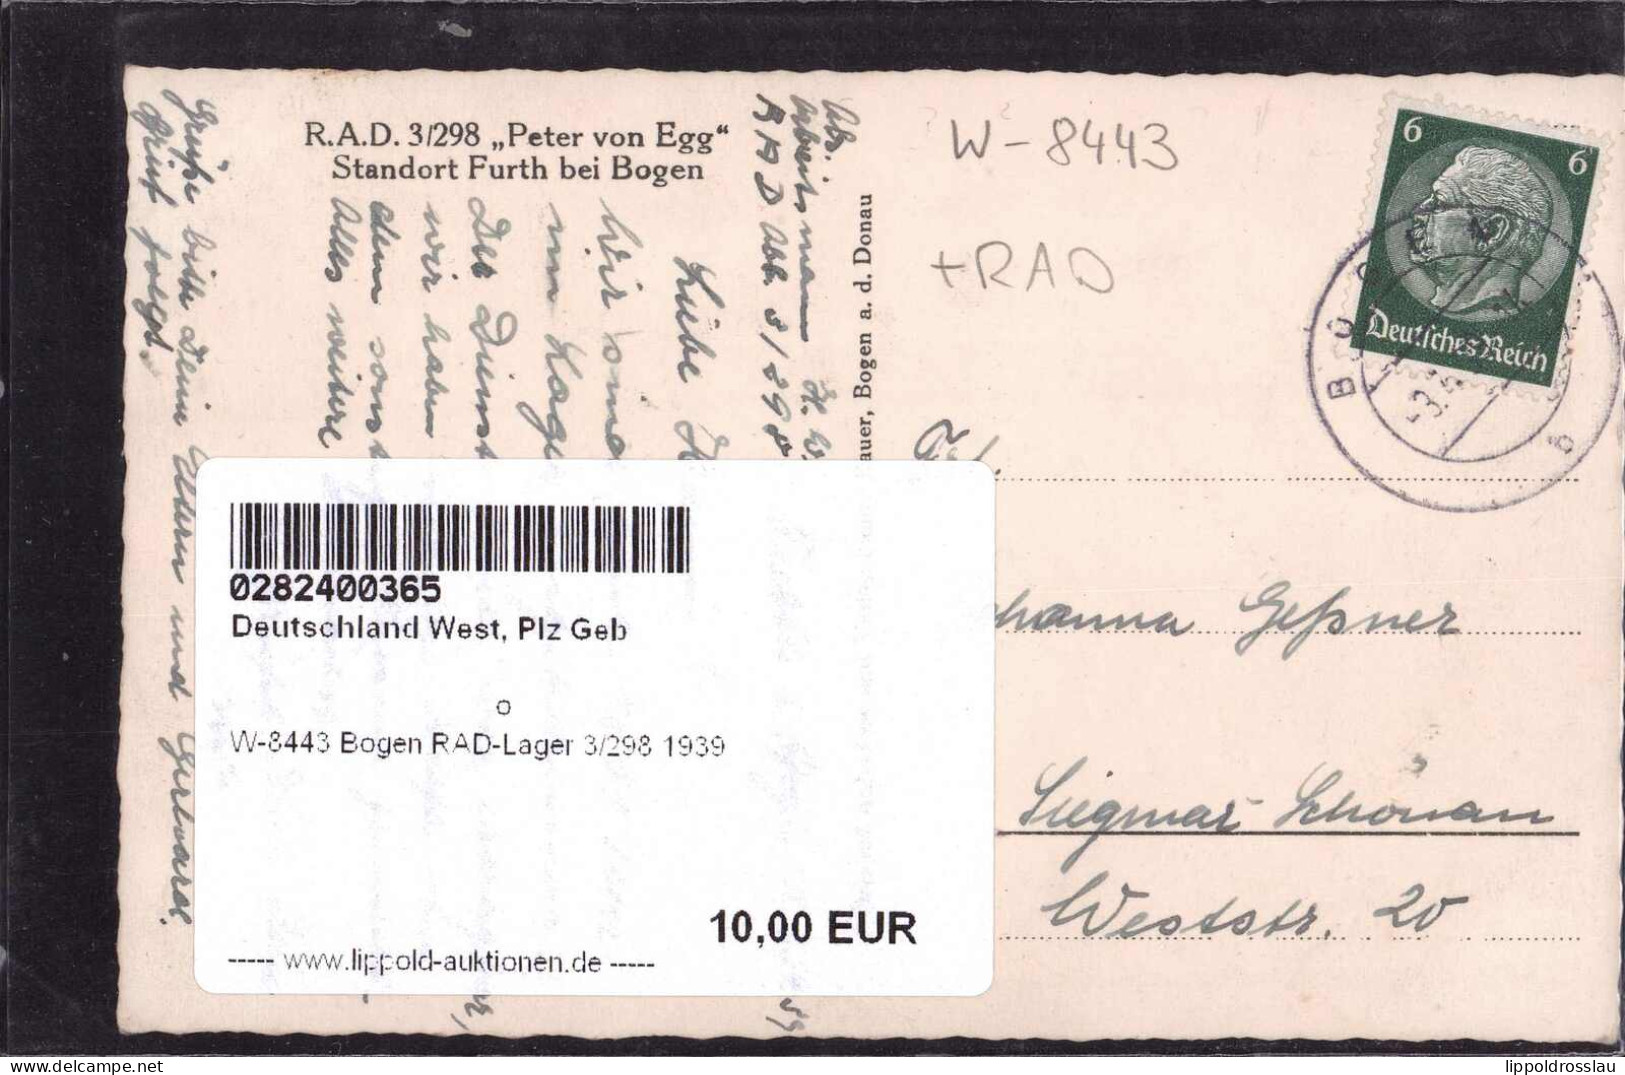 Gest. W-8443 Bogen RAD-Lager 3/298 1939 - Straubing